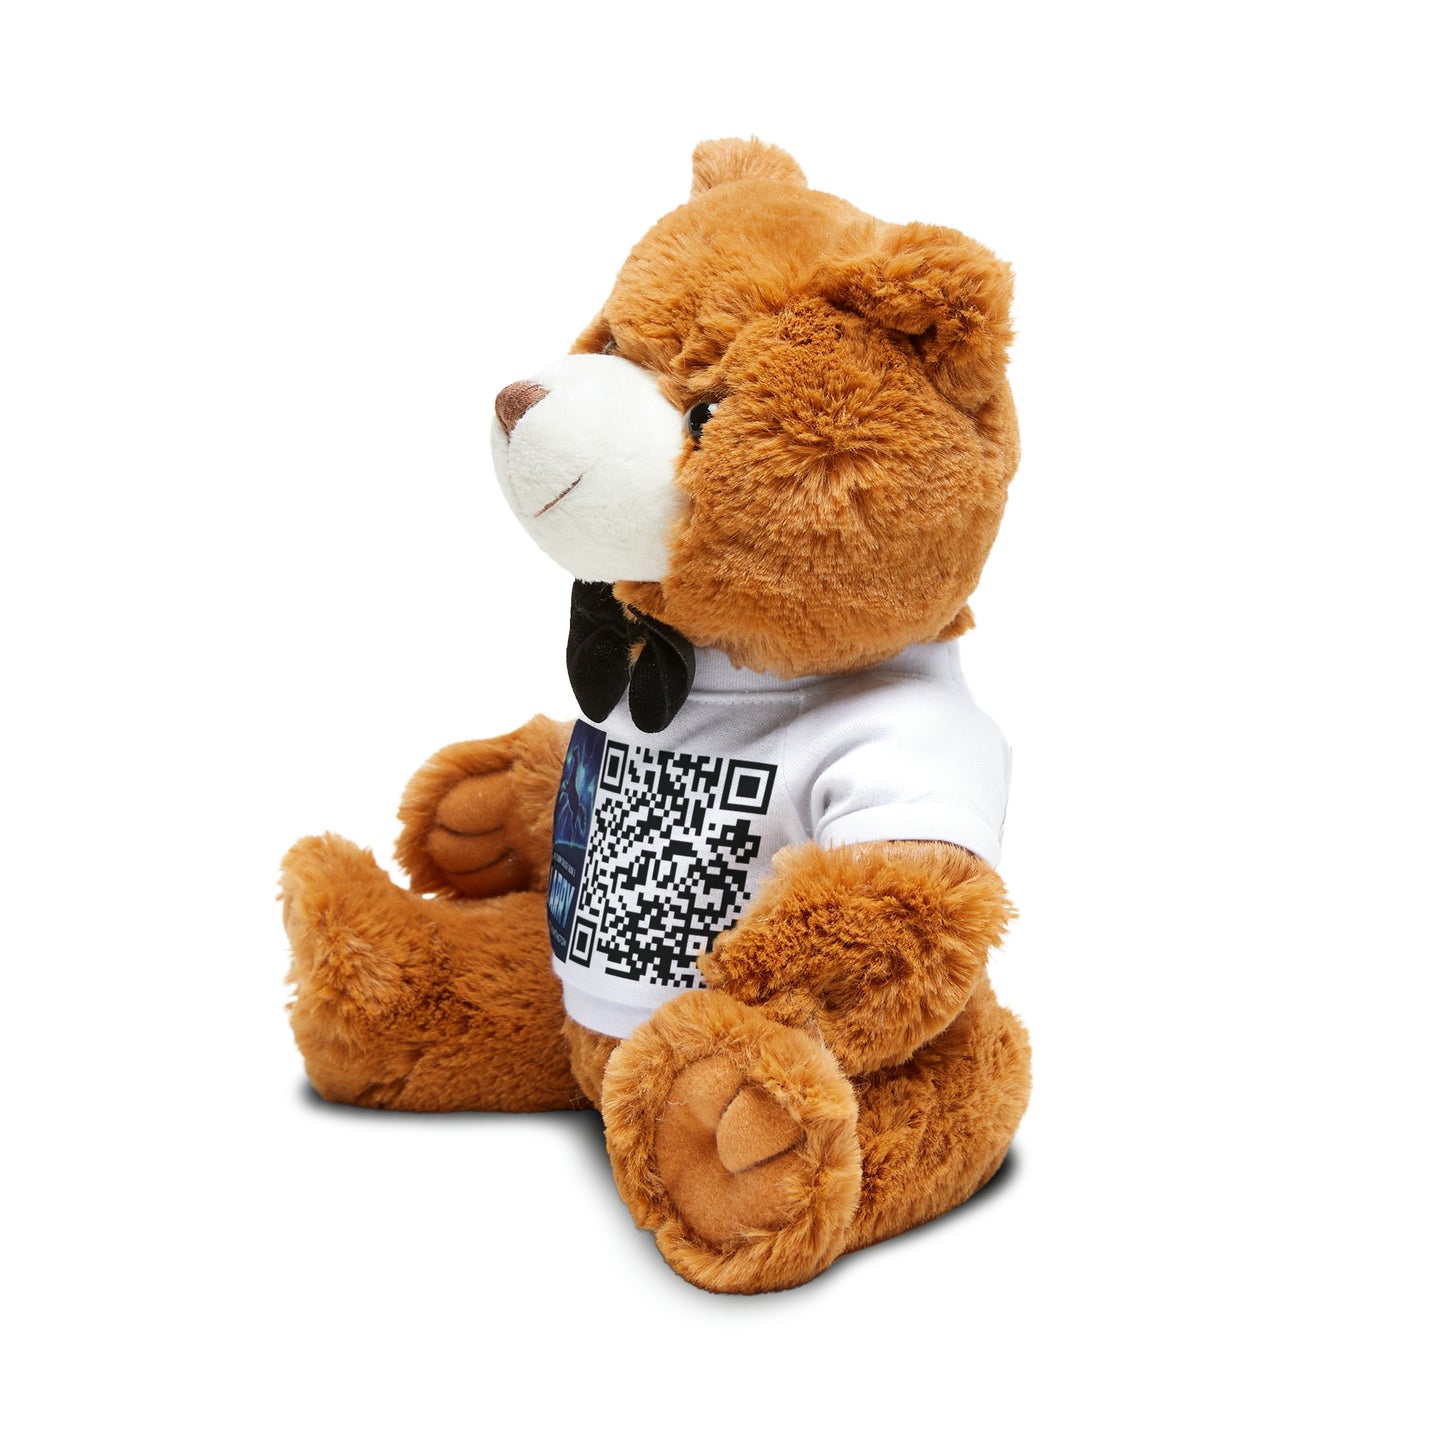 Larry - Teddy Bear